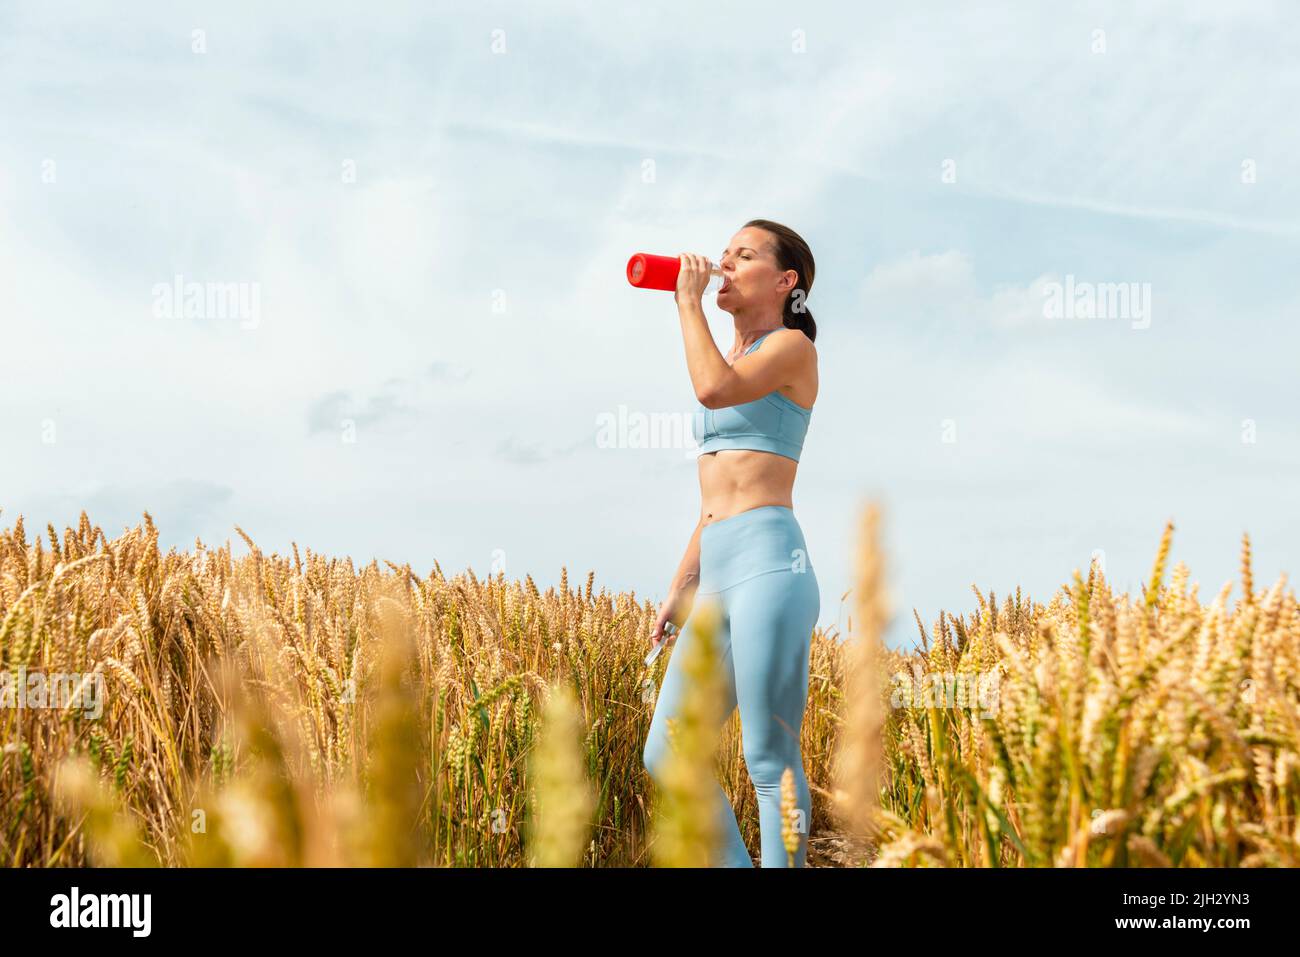 Sportliche Frau auf dem Land trinkt Wasser aus einer Glasflasche. Stockfoto